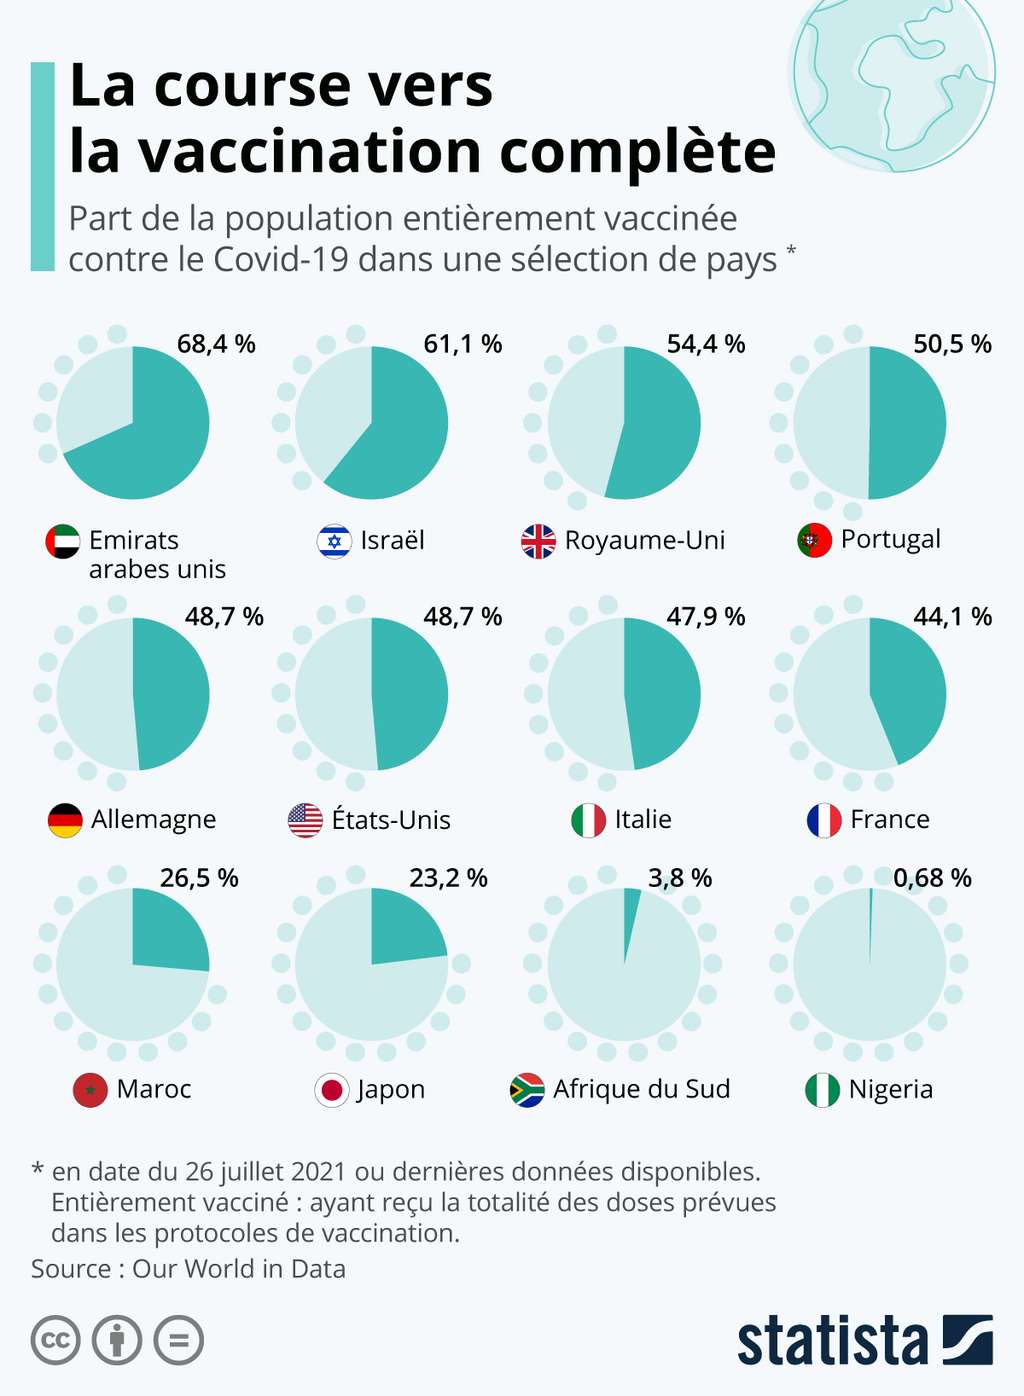 Part de la population vaccinée dans différents pays. © Statista